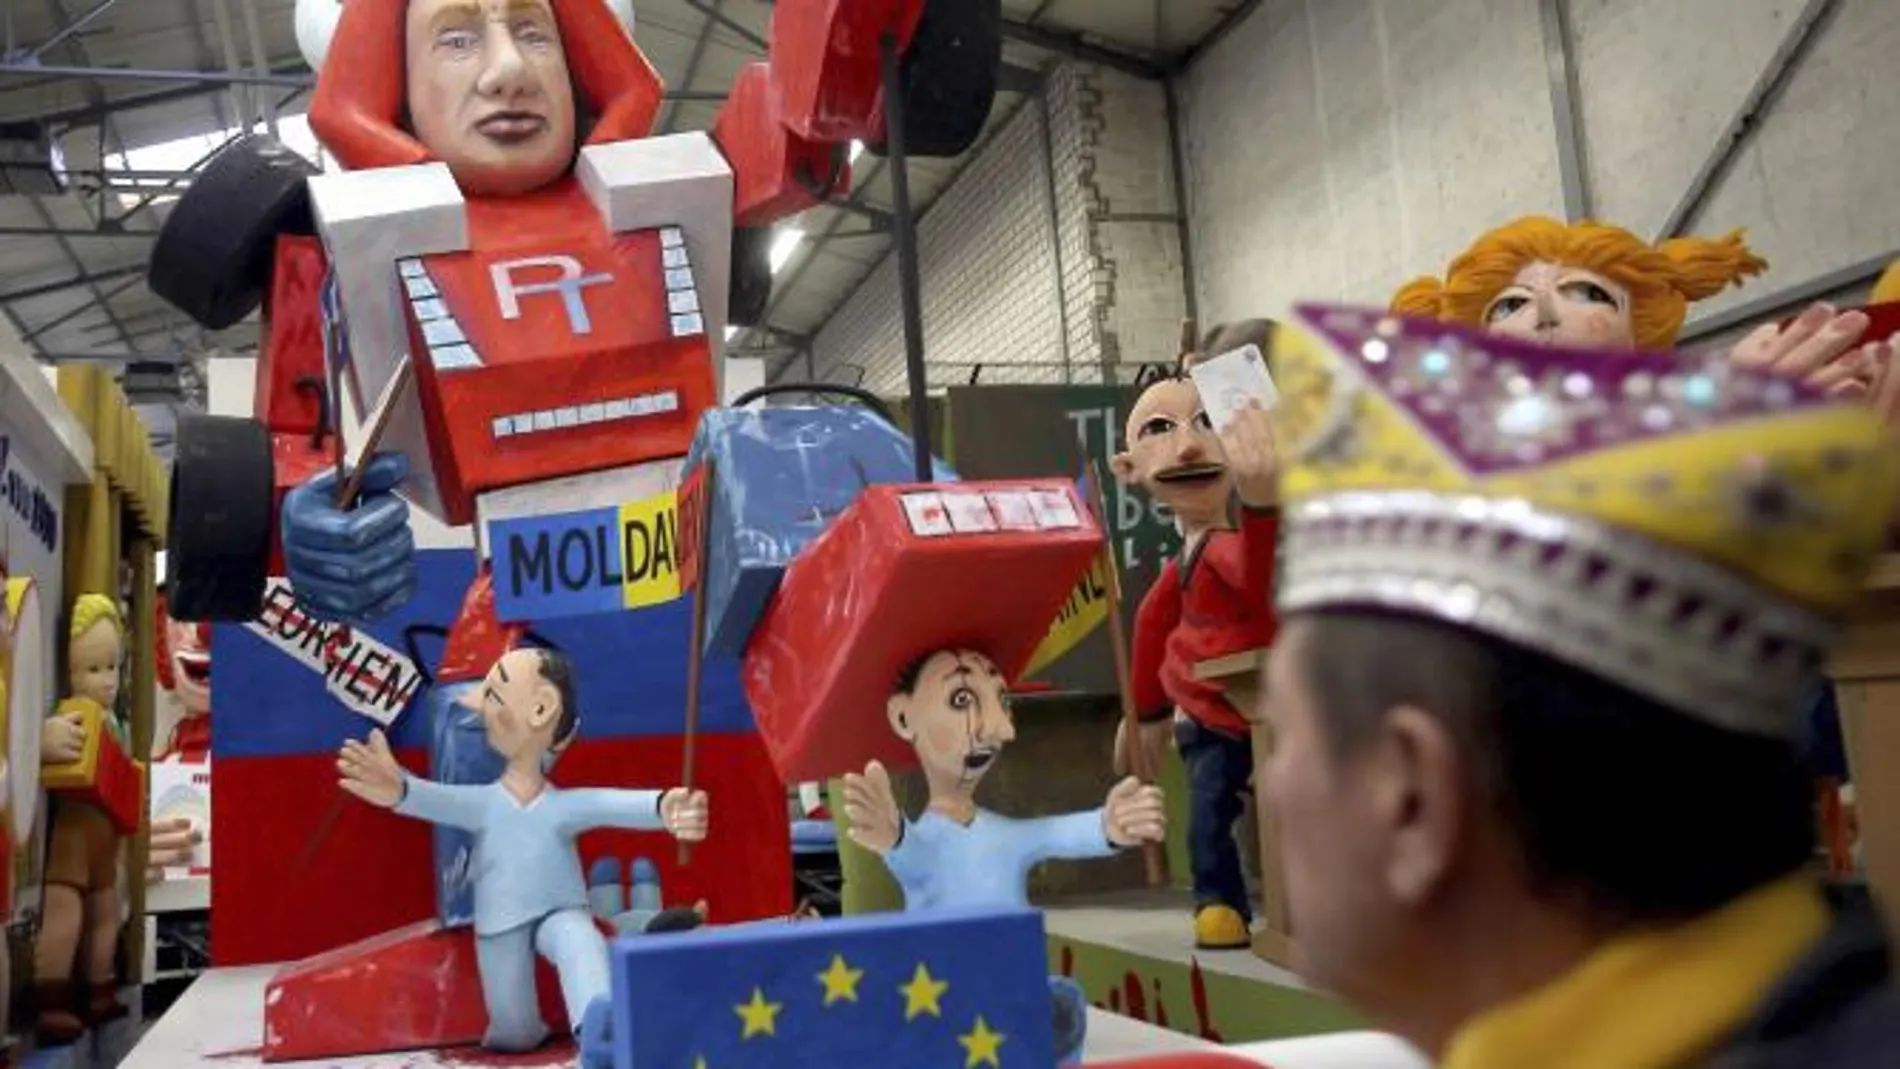 Vista de una carroza de carnaval que representa al presidente ruso Vladimir Putin.